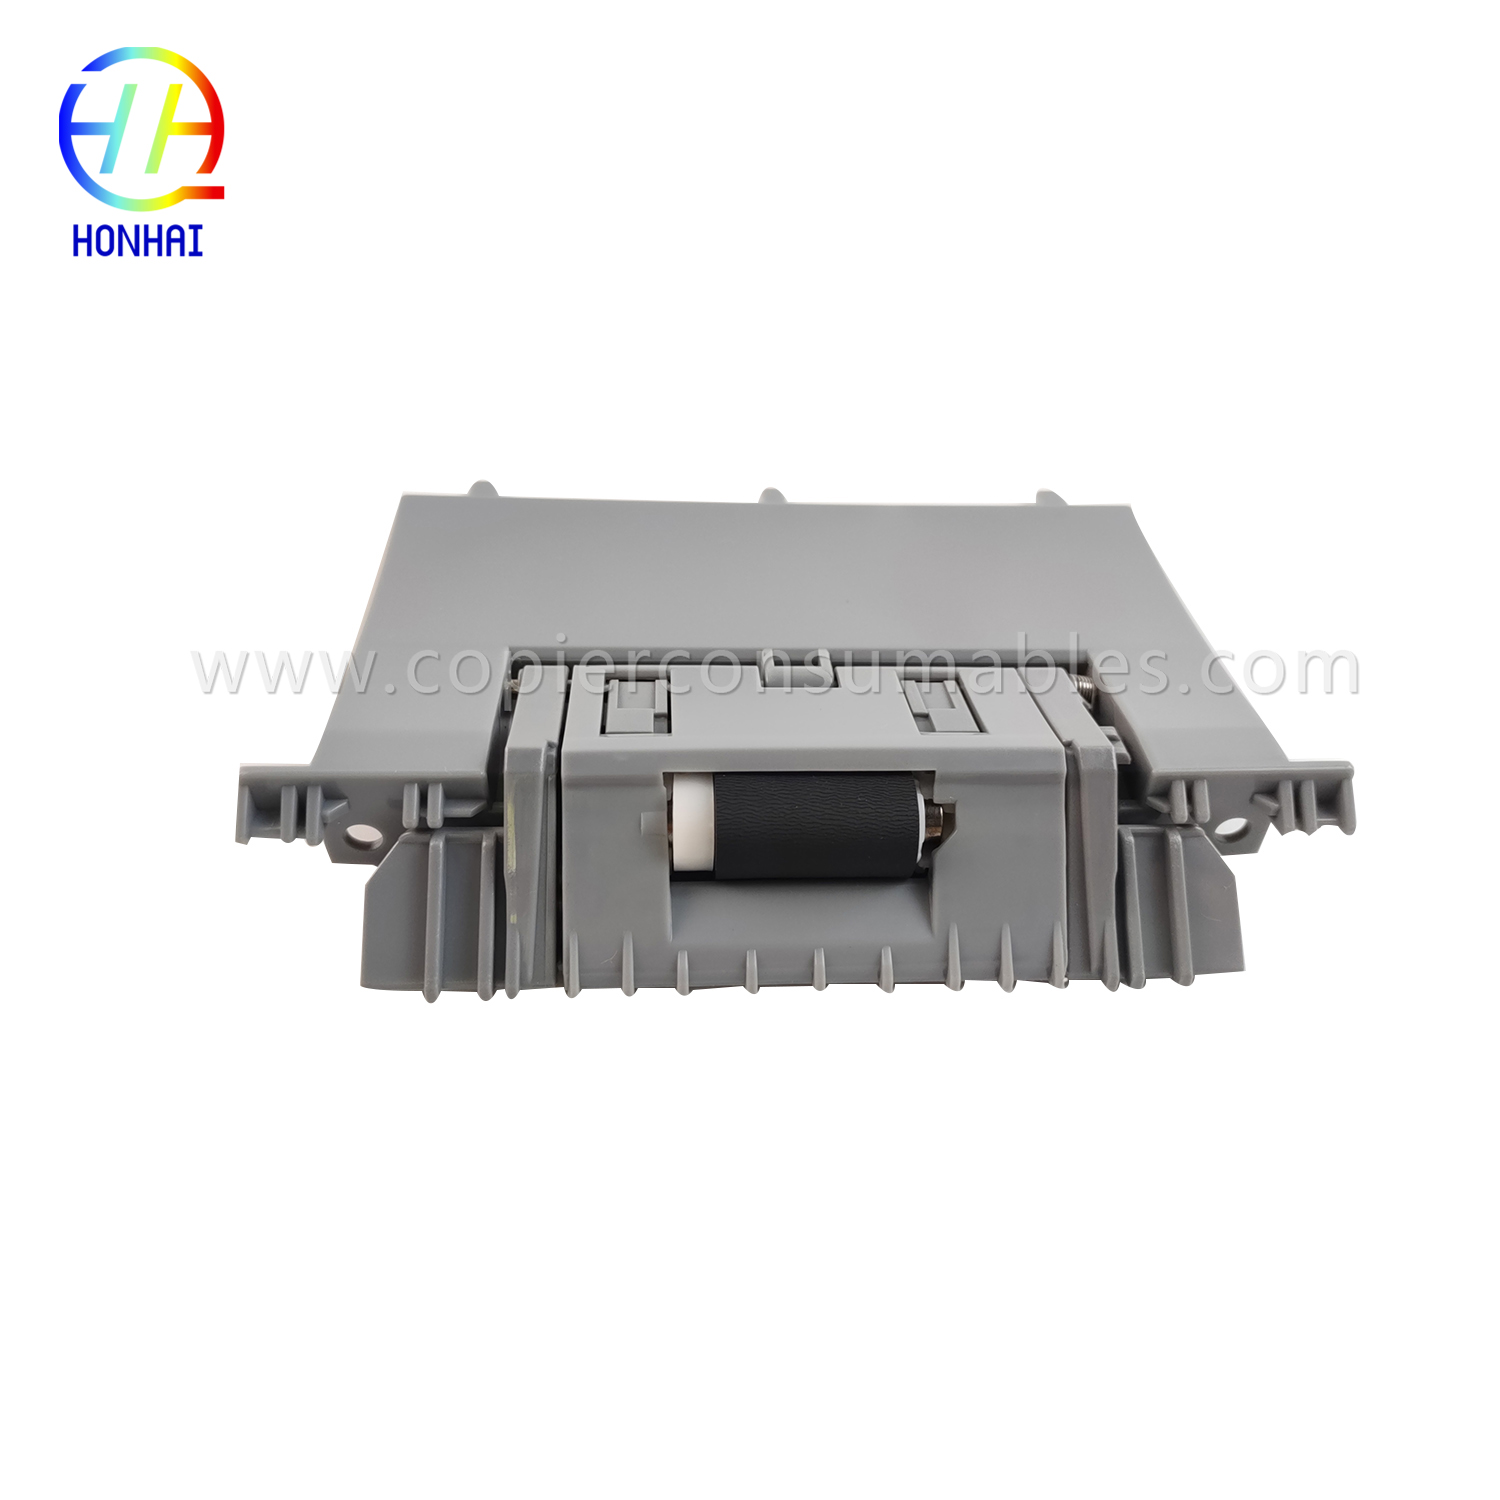 https://www.copierhonhaitech.com/sm/separation-roller-assembly-cassette-for-hp-laserjet-enterprise-500-color-m551dn-rm18129000cn-rm1-8129-000cn-oem-product/